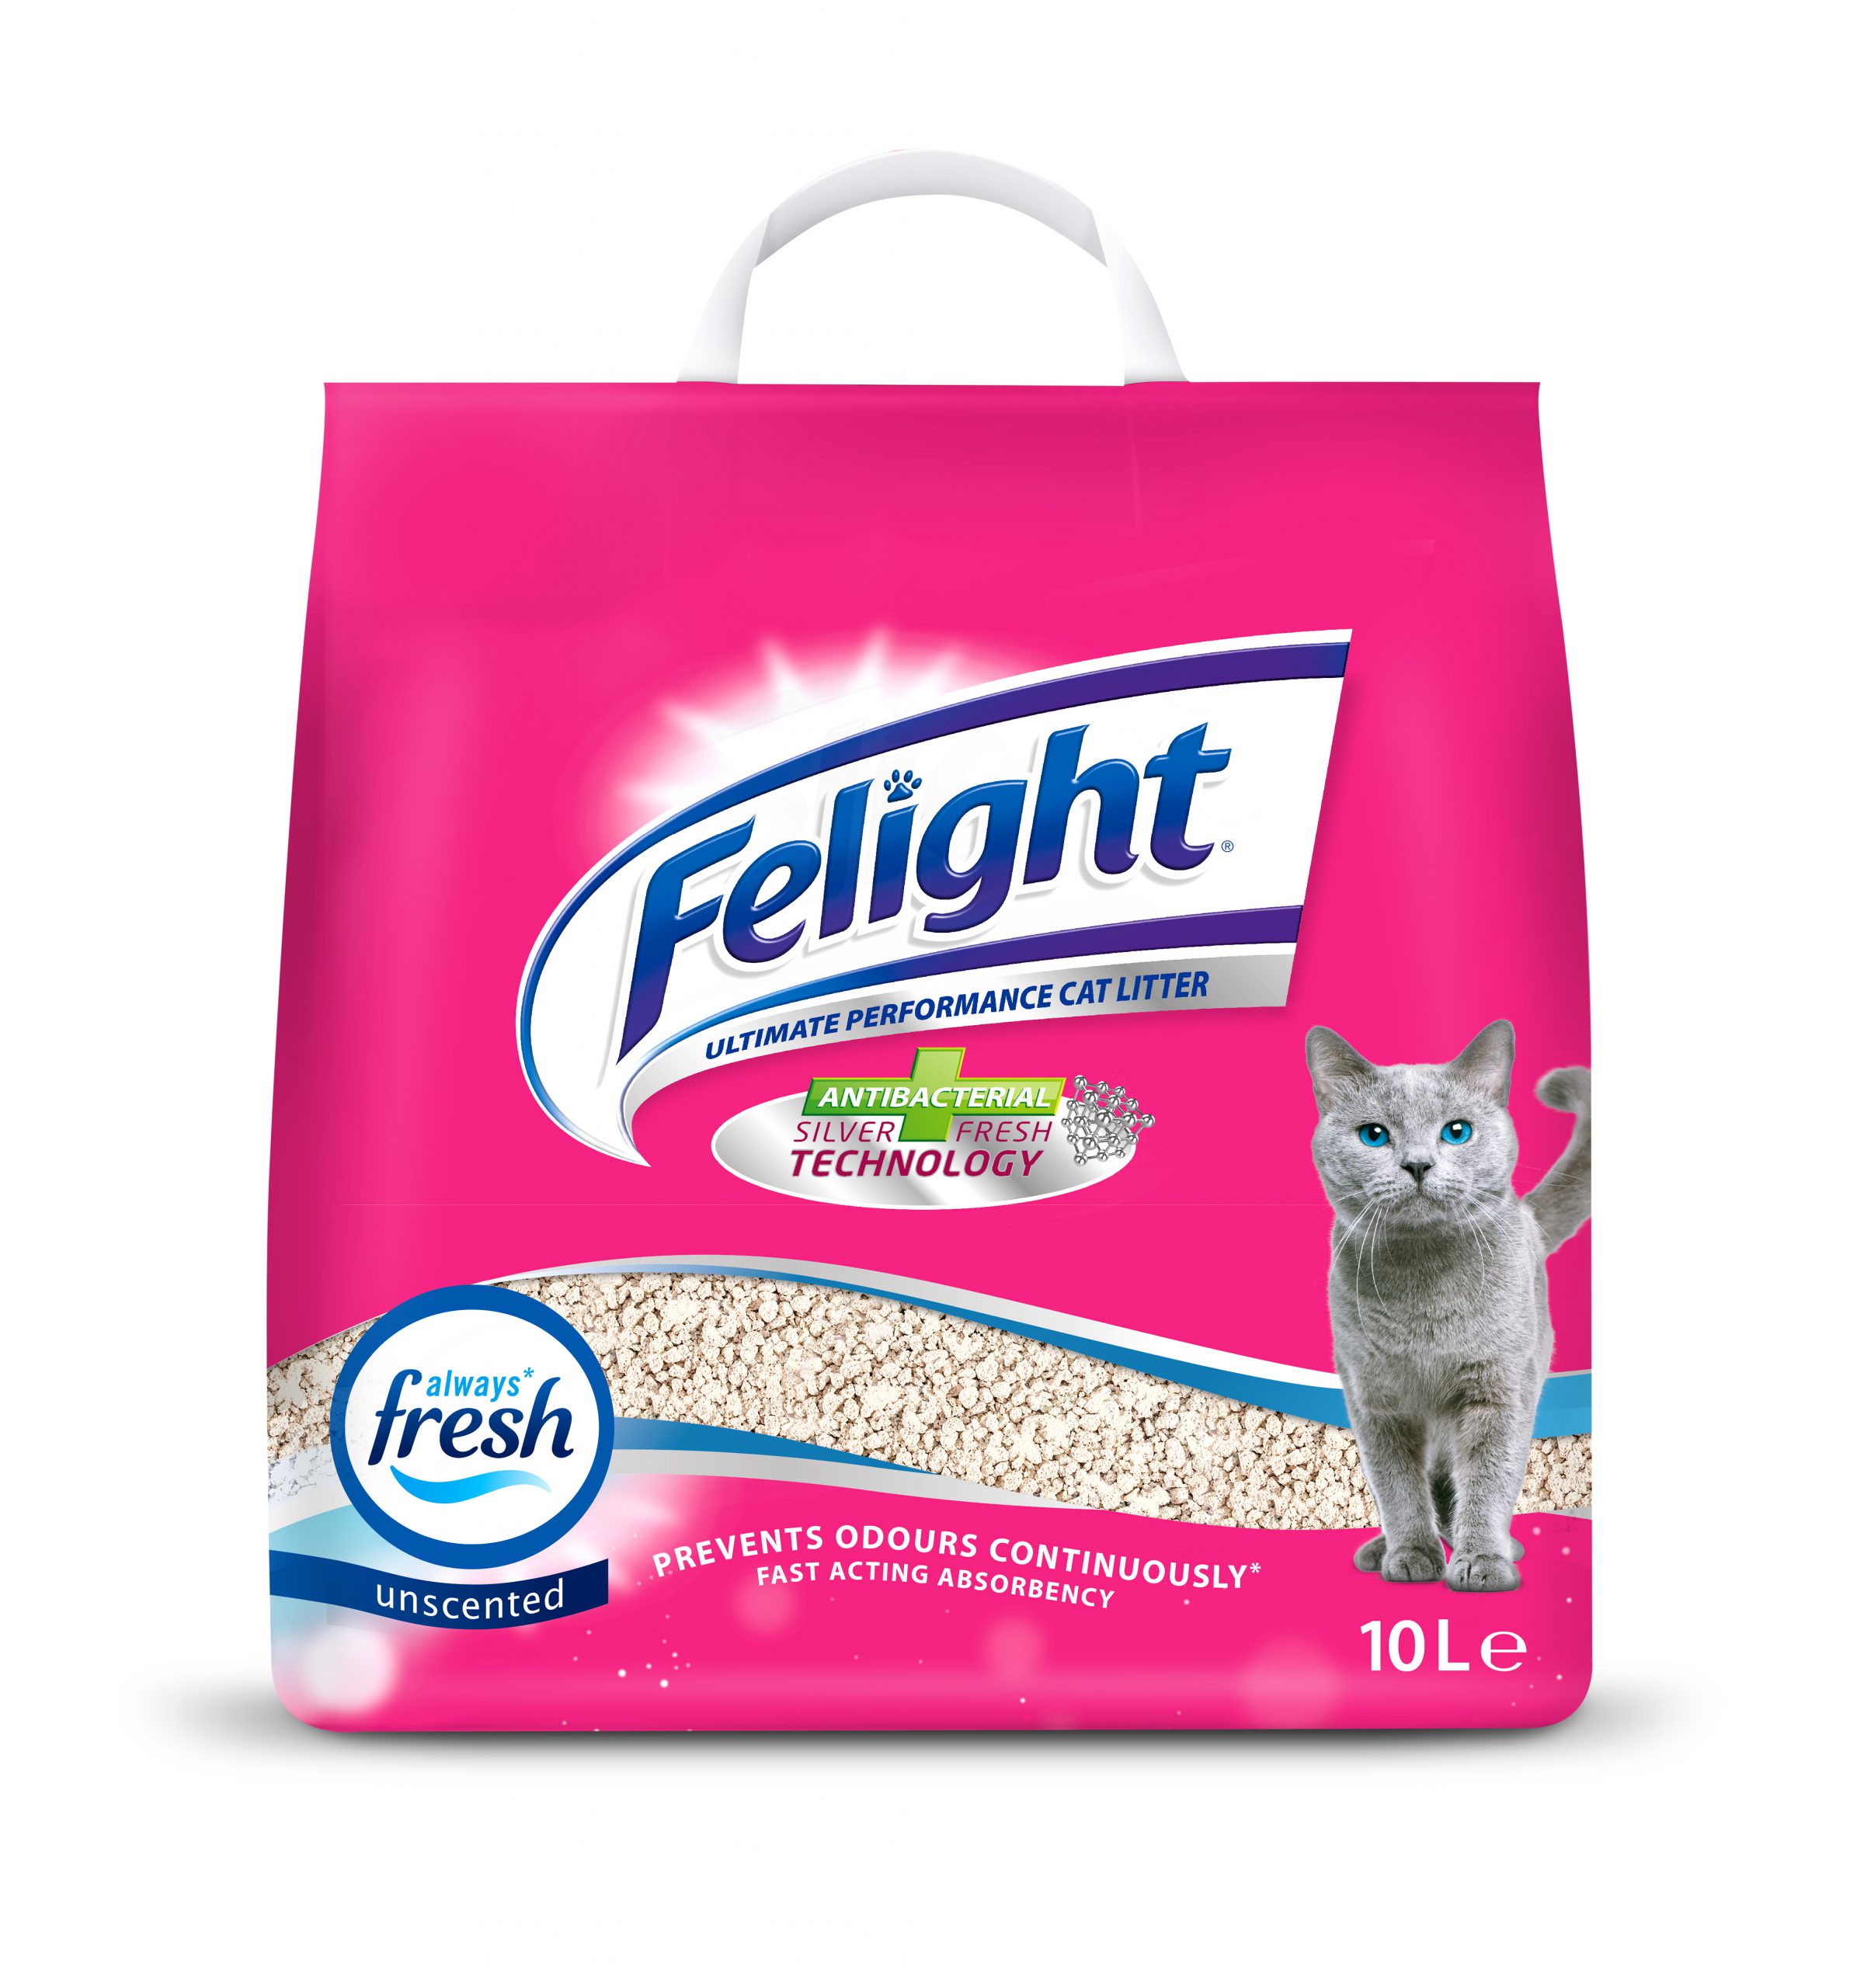 Felight Antibacterial NonClumping Cat Litter 10L Bob Martin